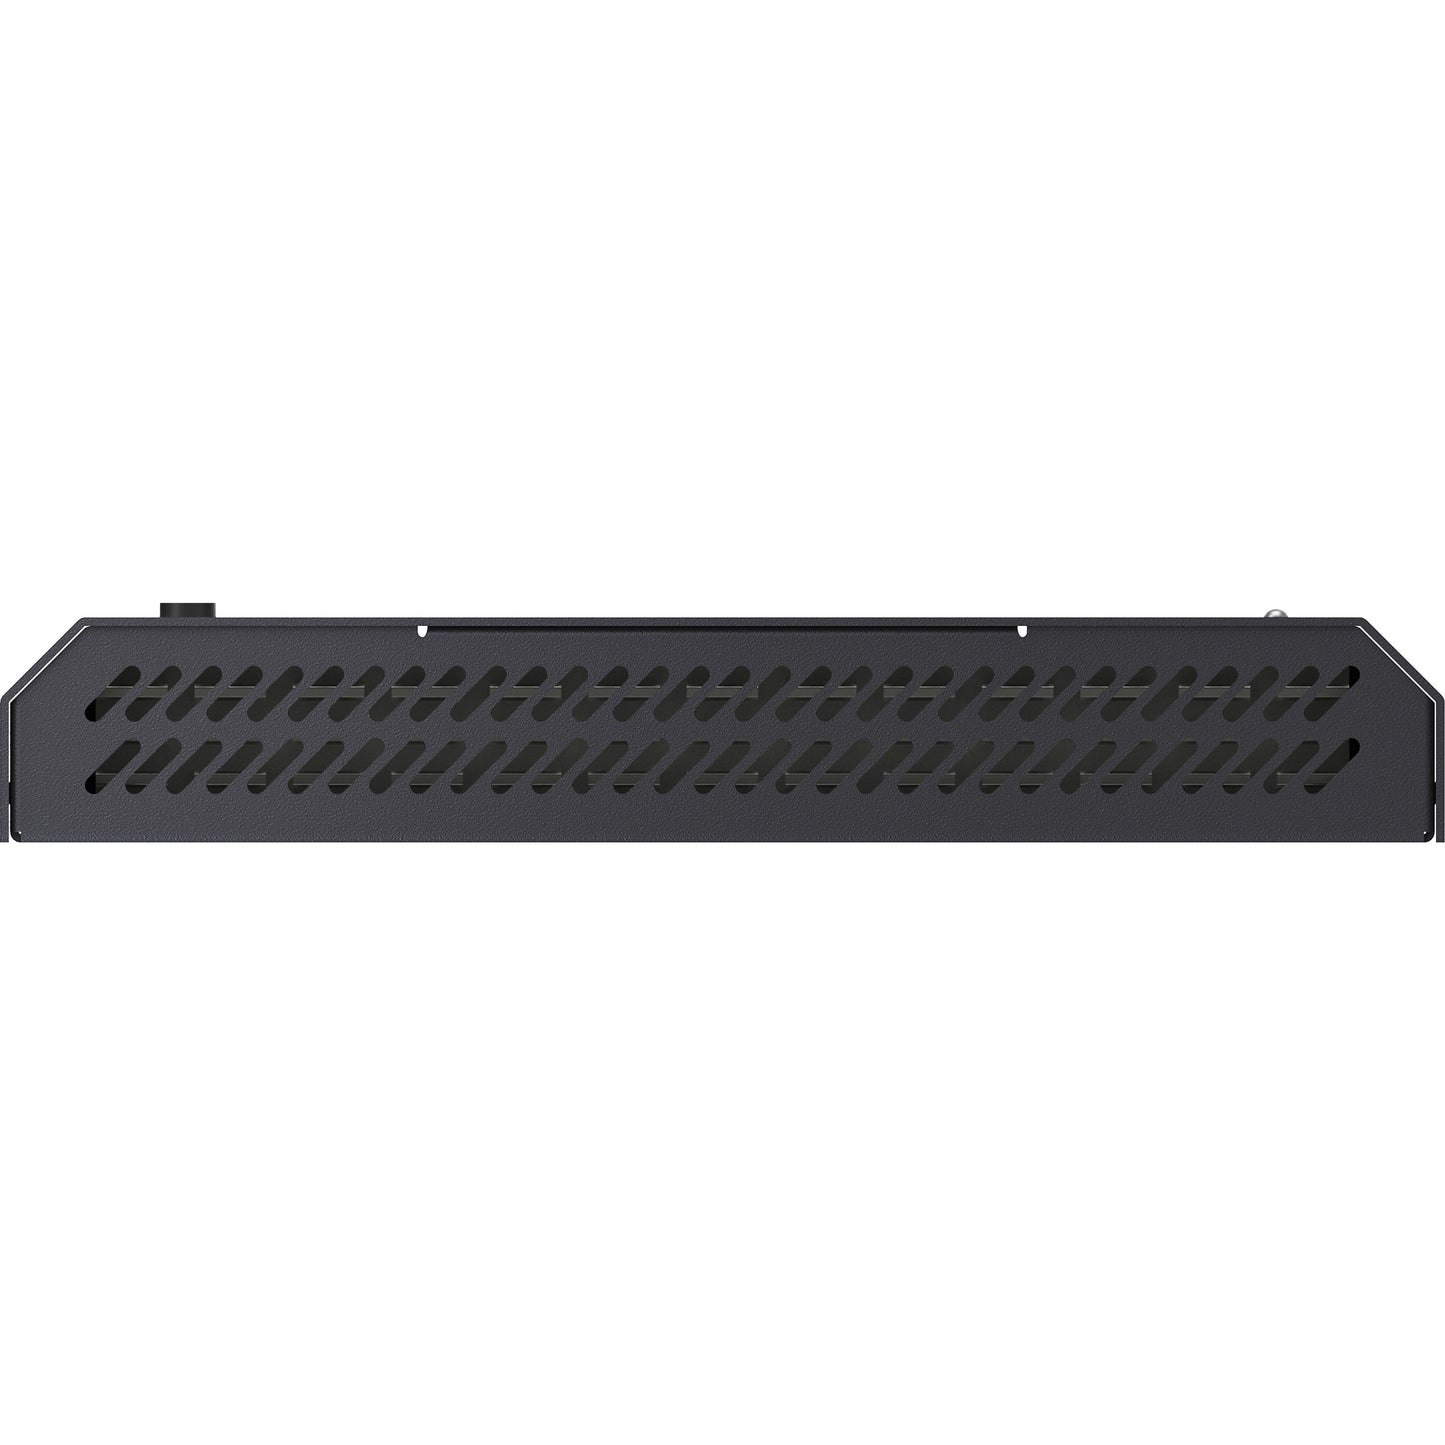 Black Box MCX S7 4K60 Network AV Decoder - HDCP 2.2 HDMI 2.0 10-GbE Fiber